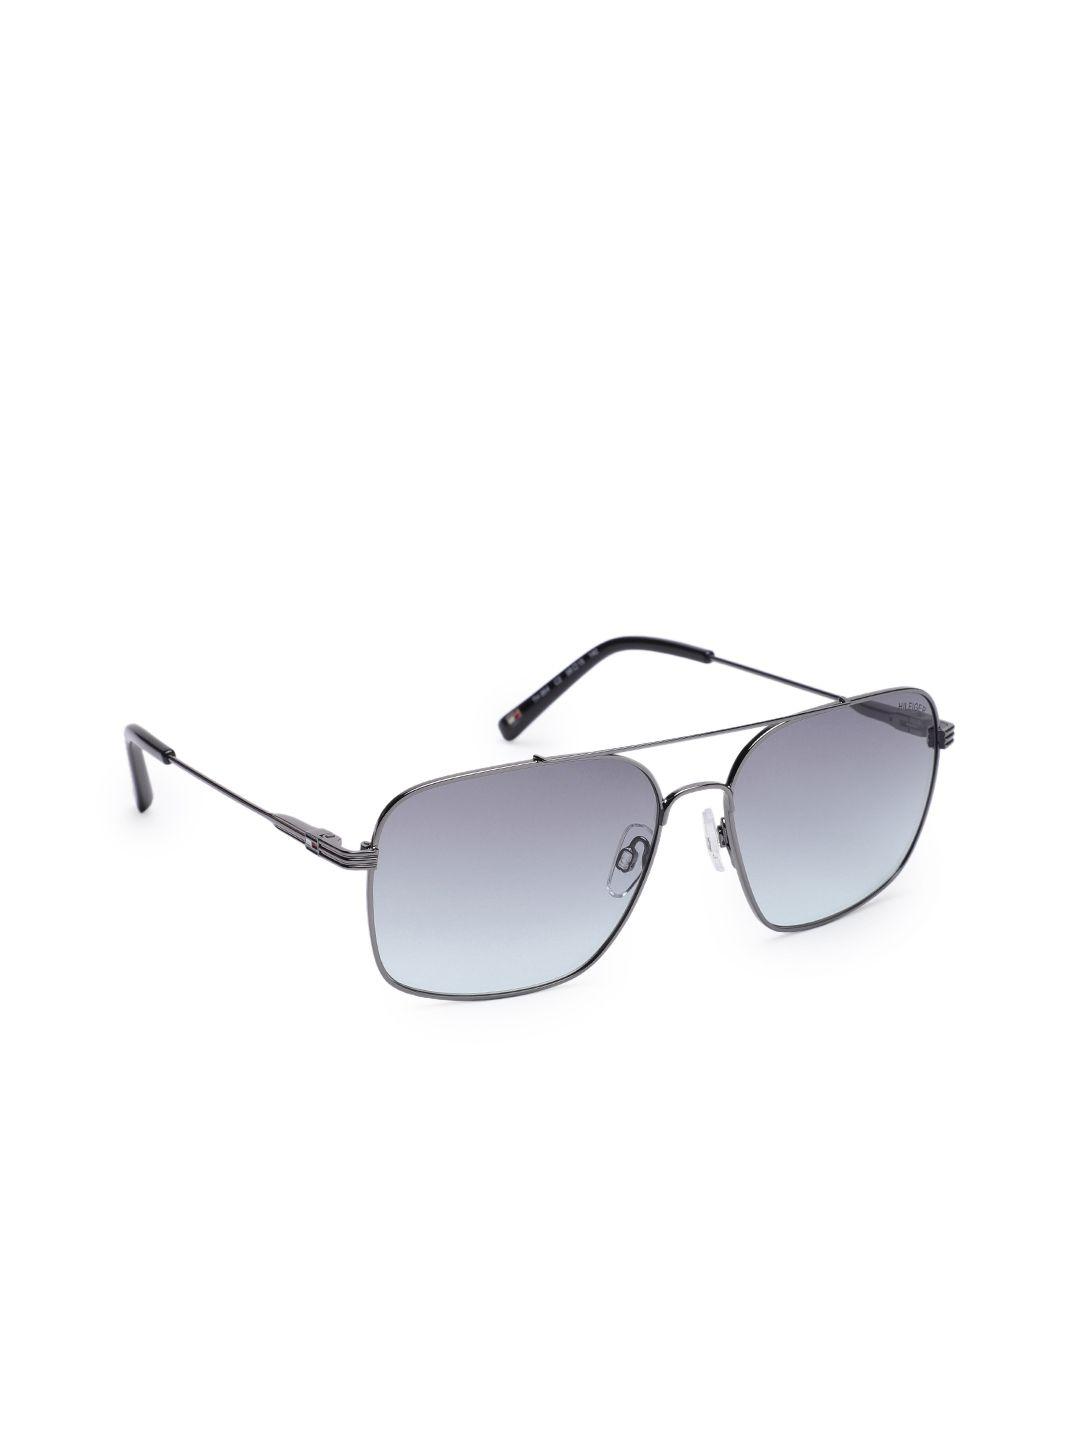 tommy hilfiger men blue lens & gunmetal-toned aviator sunglasses tommy hilfiger 864 c2 s